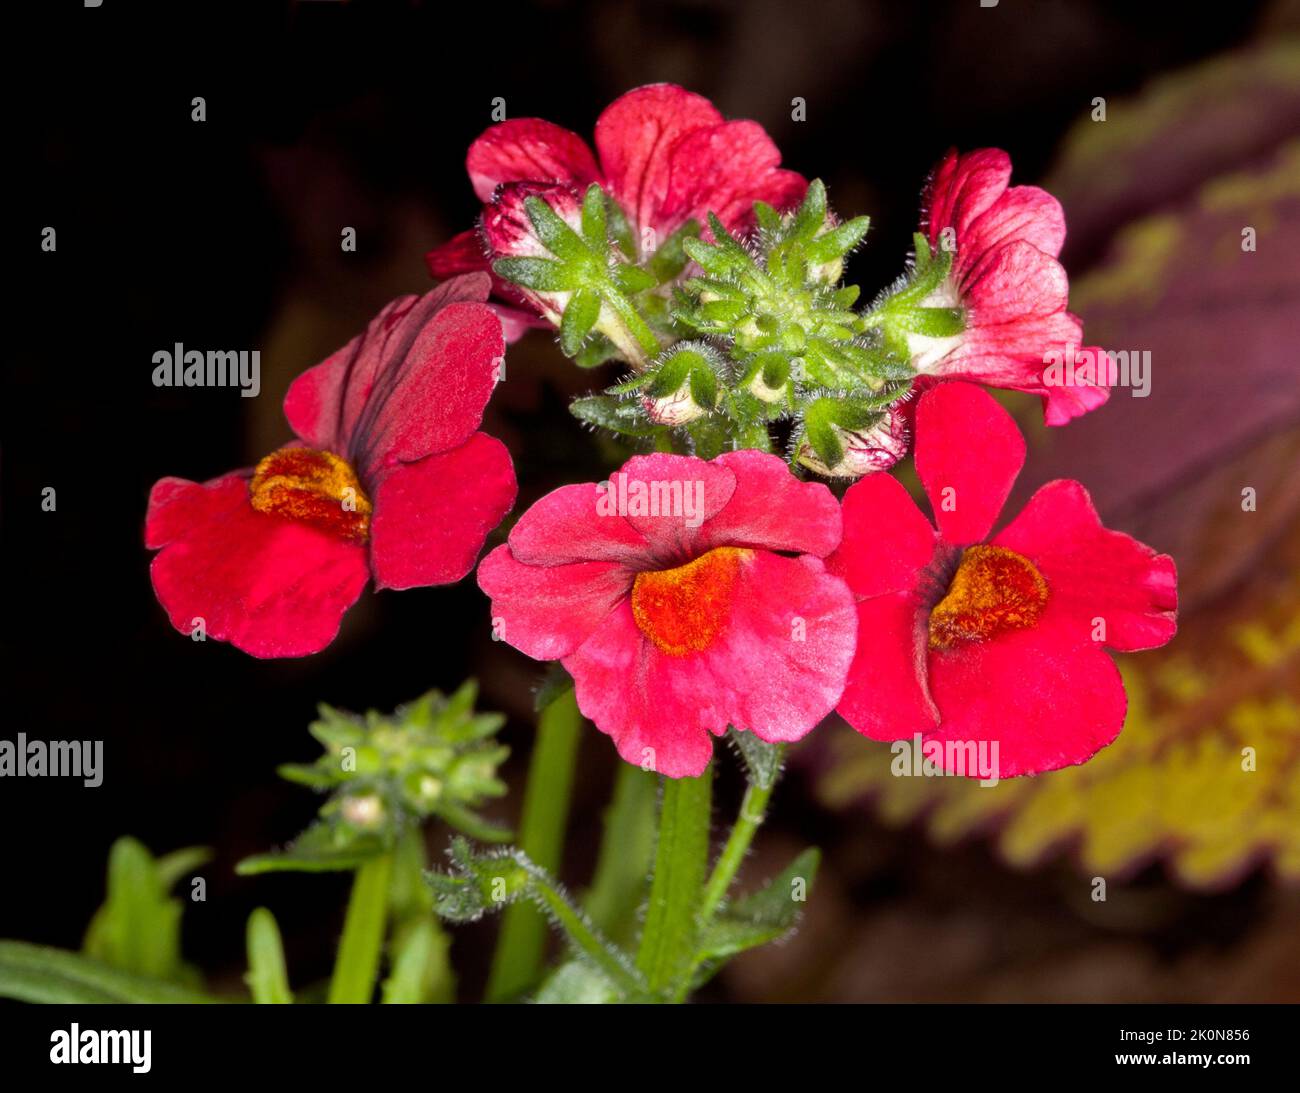 Ansammlung von leuchtend roten Blüten der Nemesia, einer jährlichen Gartenpflanze, vor dunklem Hintergrund Stockfoto